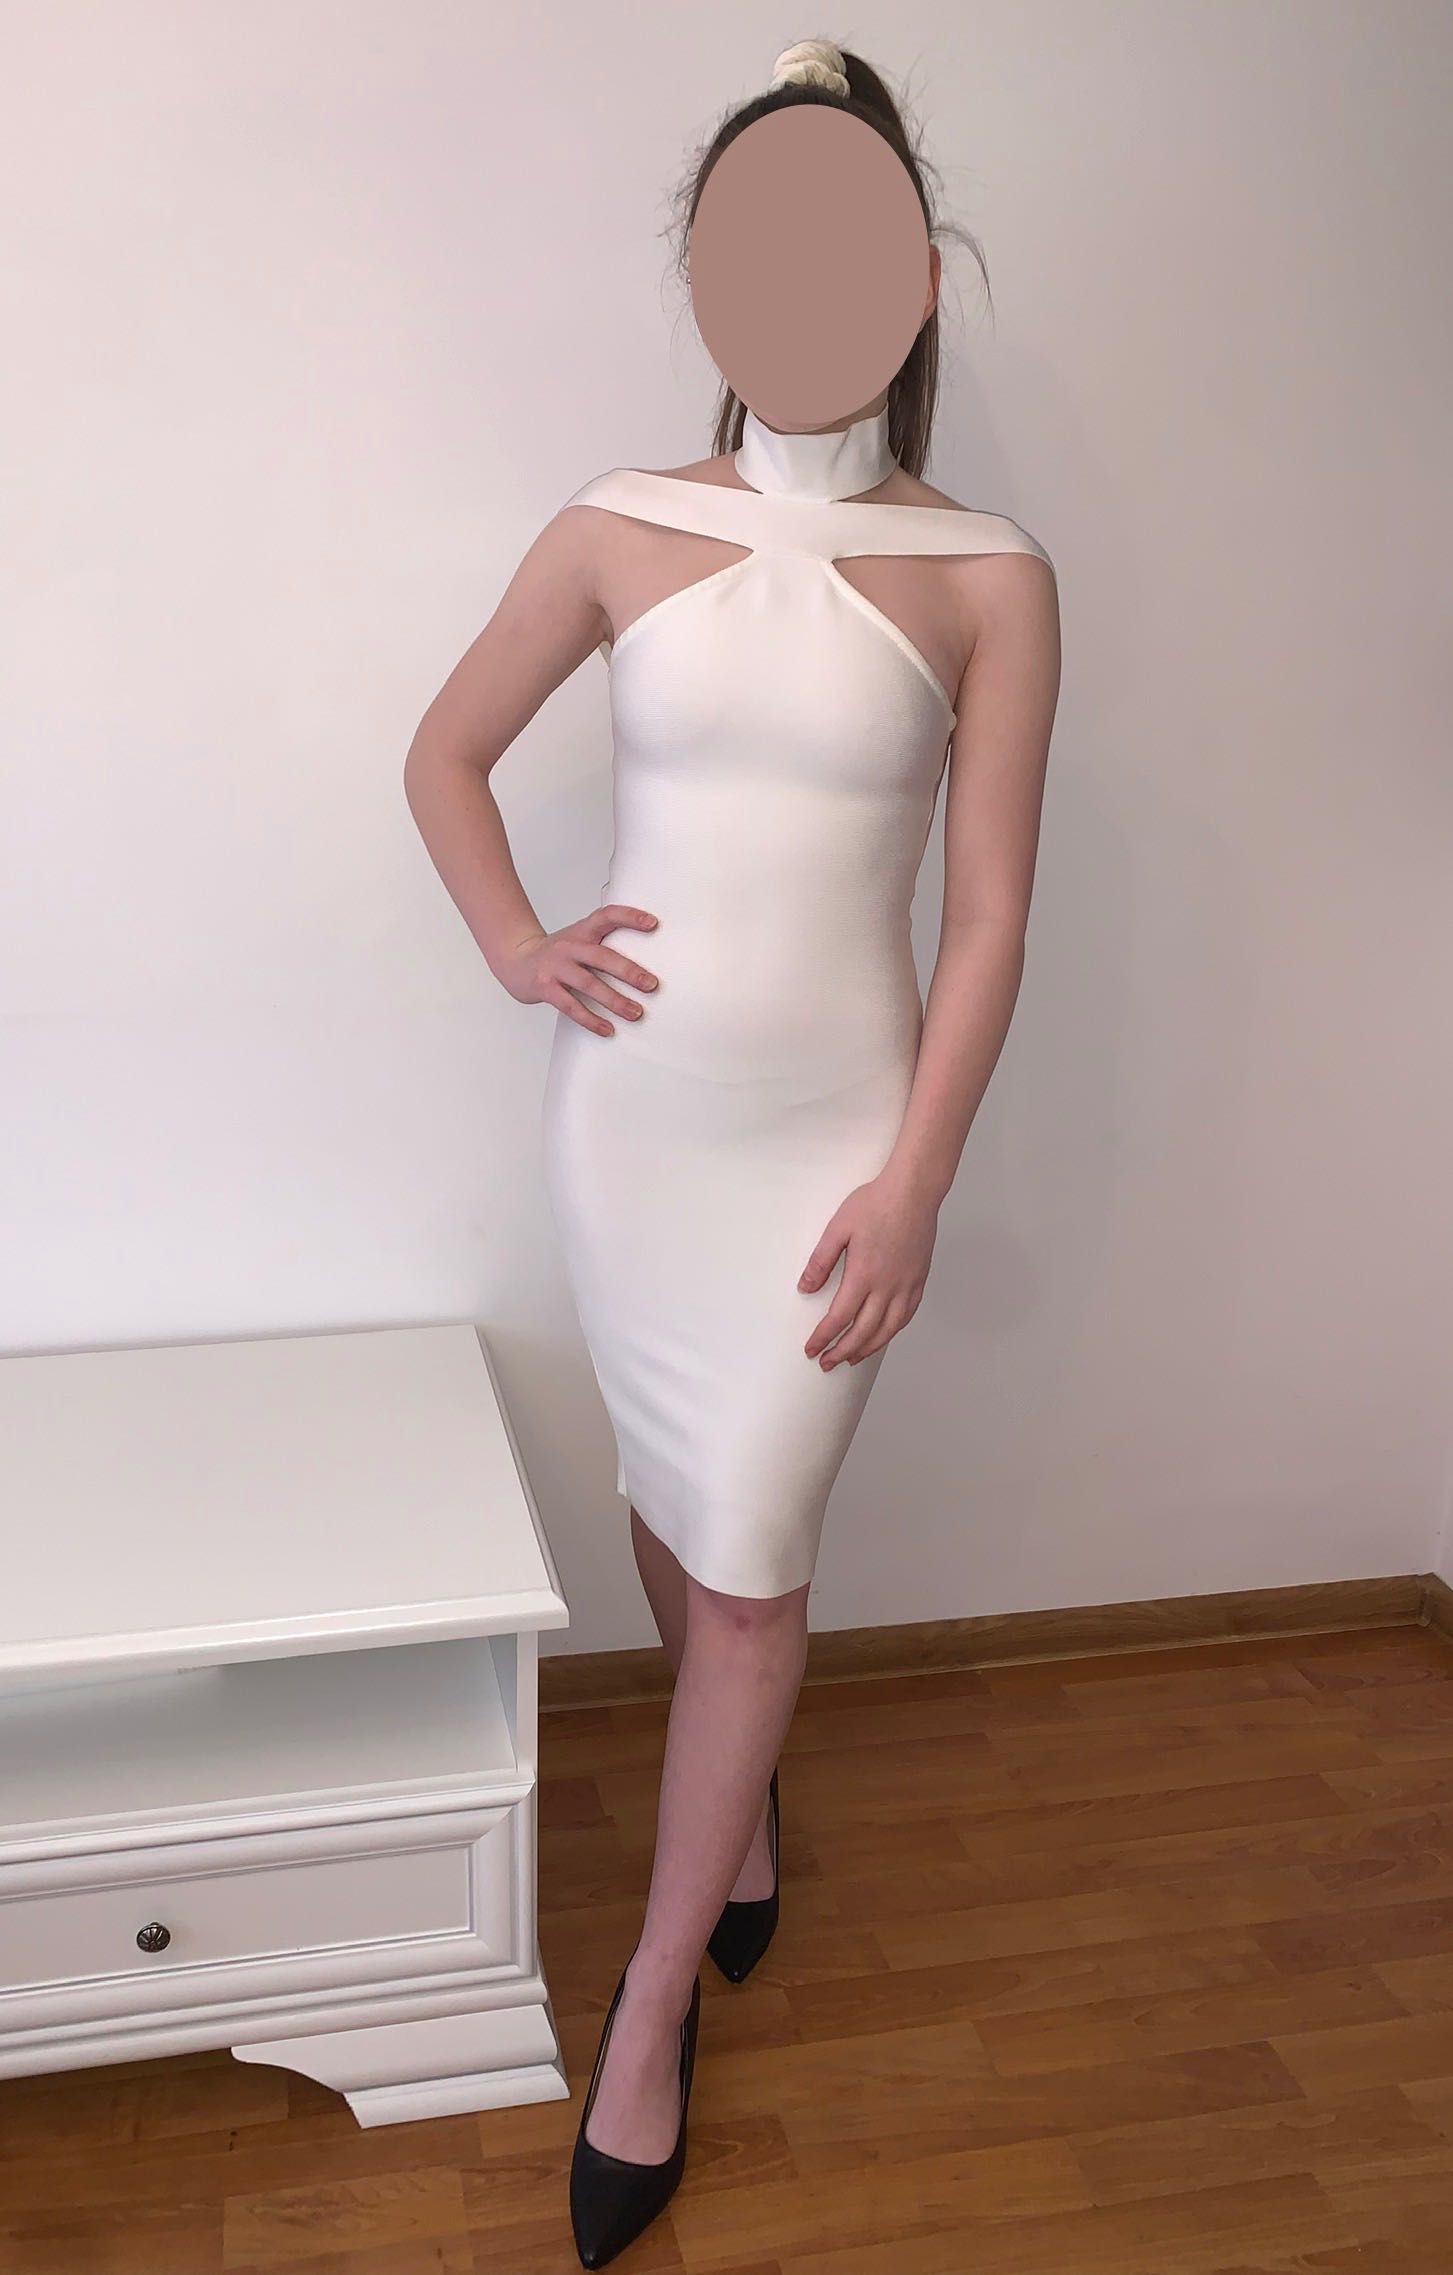 Biała bandażowa sukienka XS Boco Clothing